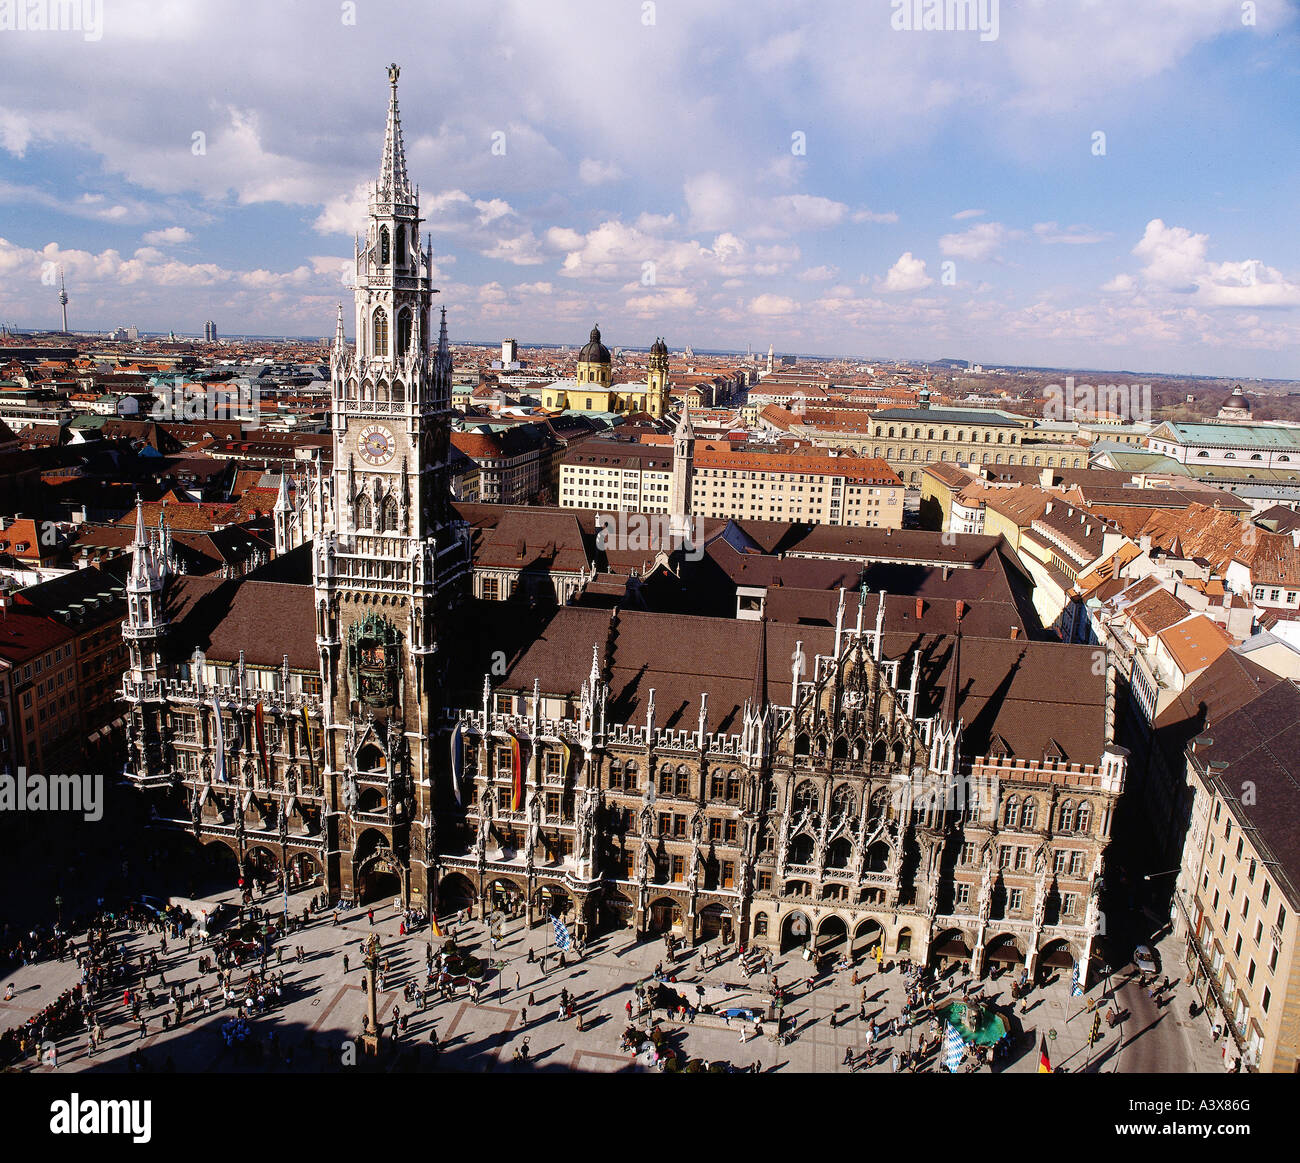 Geografía / viajes, Alemania, Baviera, Munich, ayuntamiento, vista desde 'Alter Peter' en el ayuntamiento y Marienplatz, Foto de stock